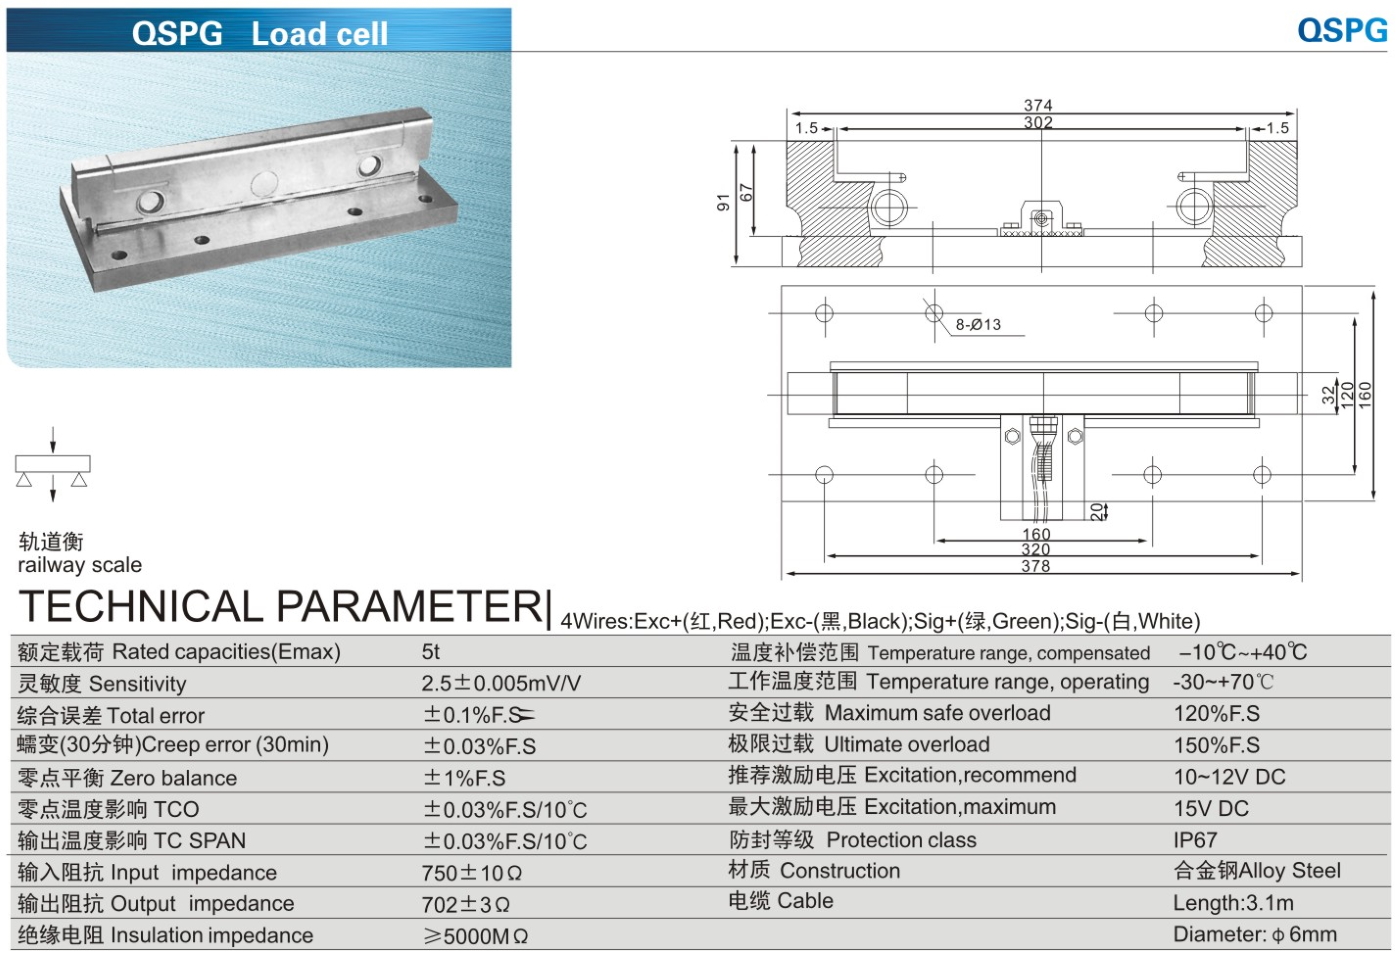 img/loadcell-images/double-ended-shear-beam/KELI_QSPG_Loadcell-TTM_Teknoloji.jpg